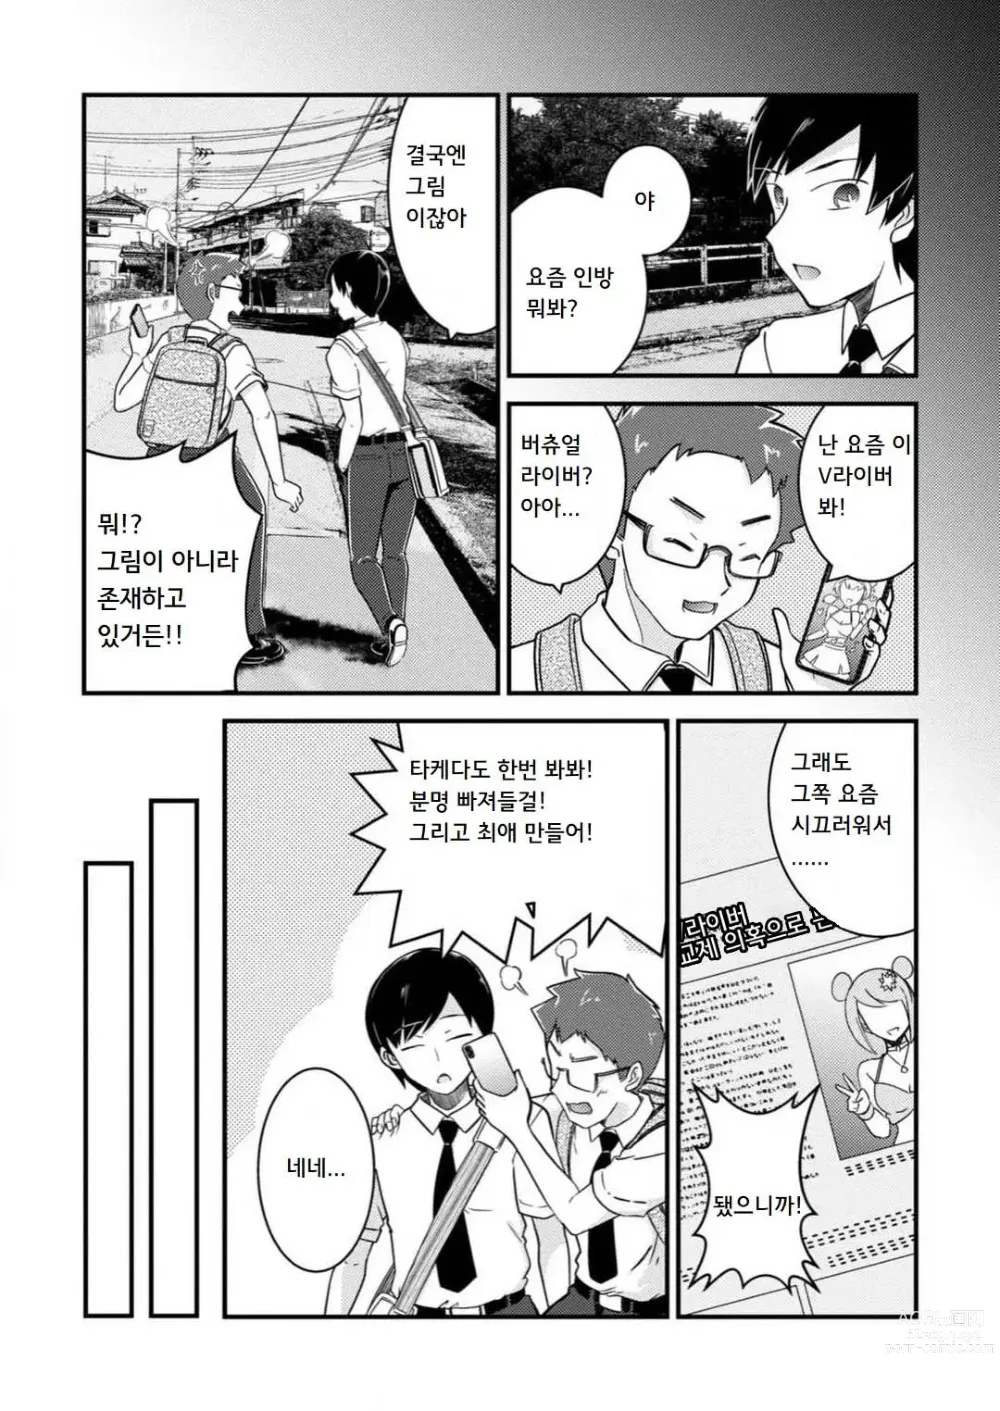 Page 5 of manga 암컷타락한 나의 동정헌팅 일기 ~전 남자인 내가 암컷 구멍에 자지를 기뻐하며 삽입될 때까지~